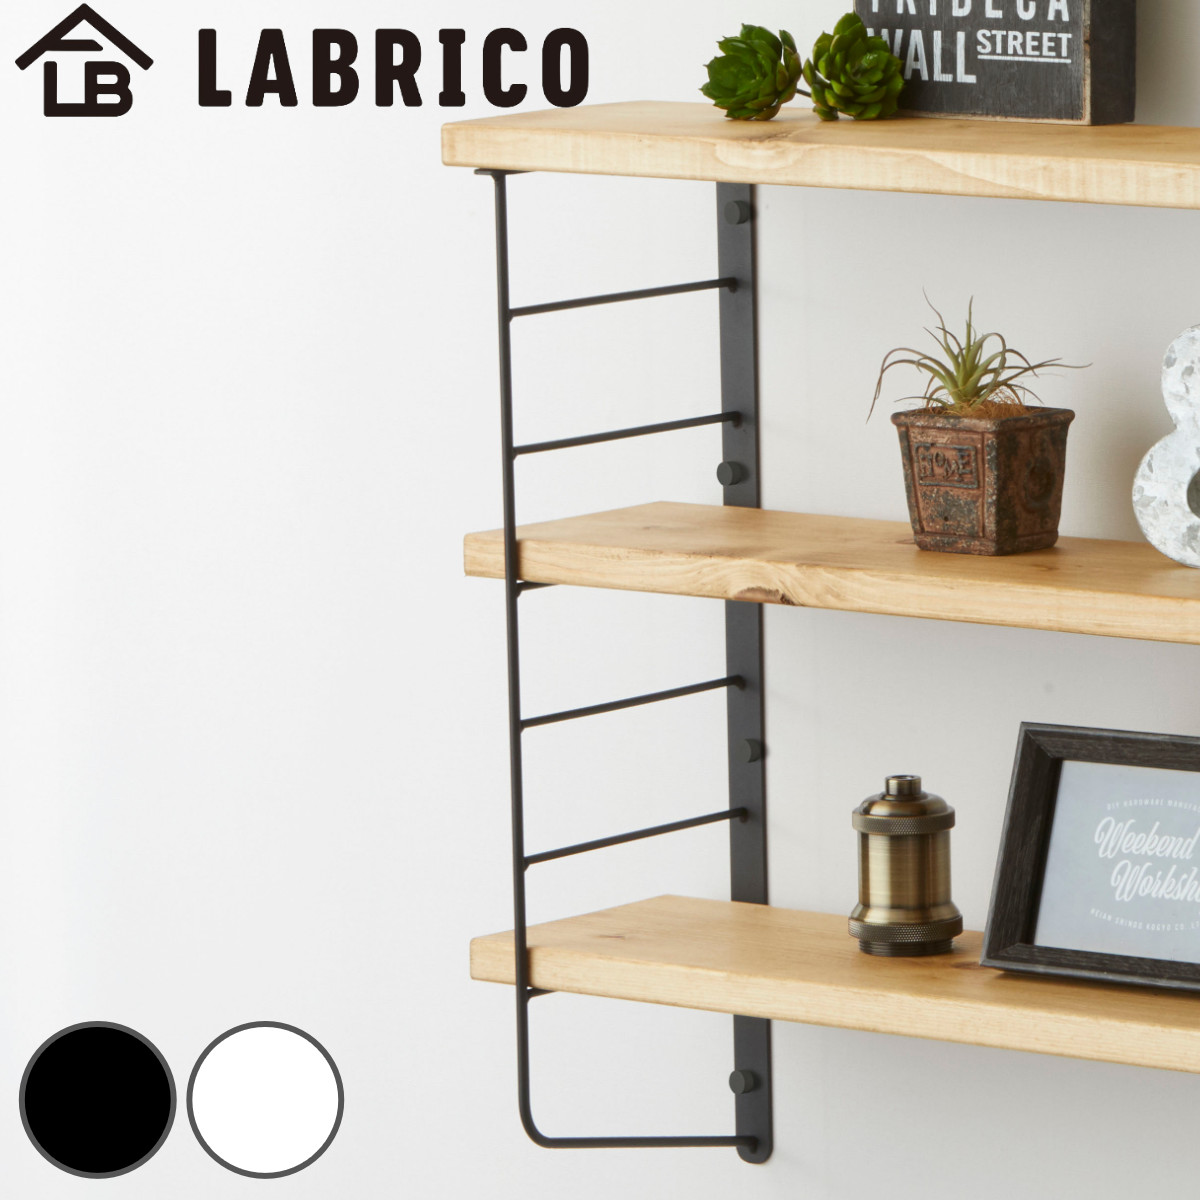 dショッピング |壁面収納 LABRICO ラブリコ シェルフフレーム L型 一個